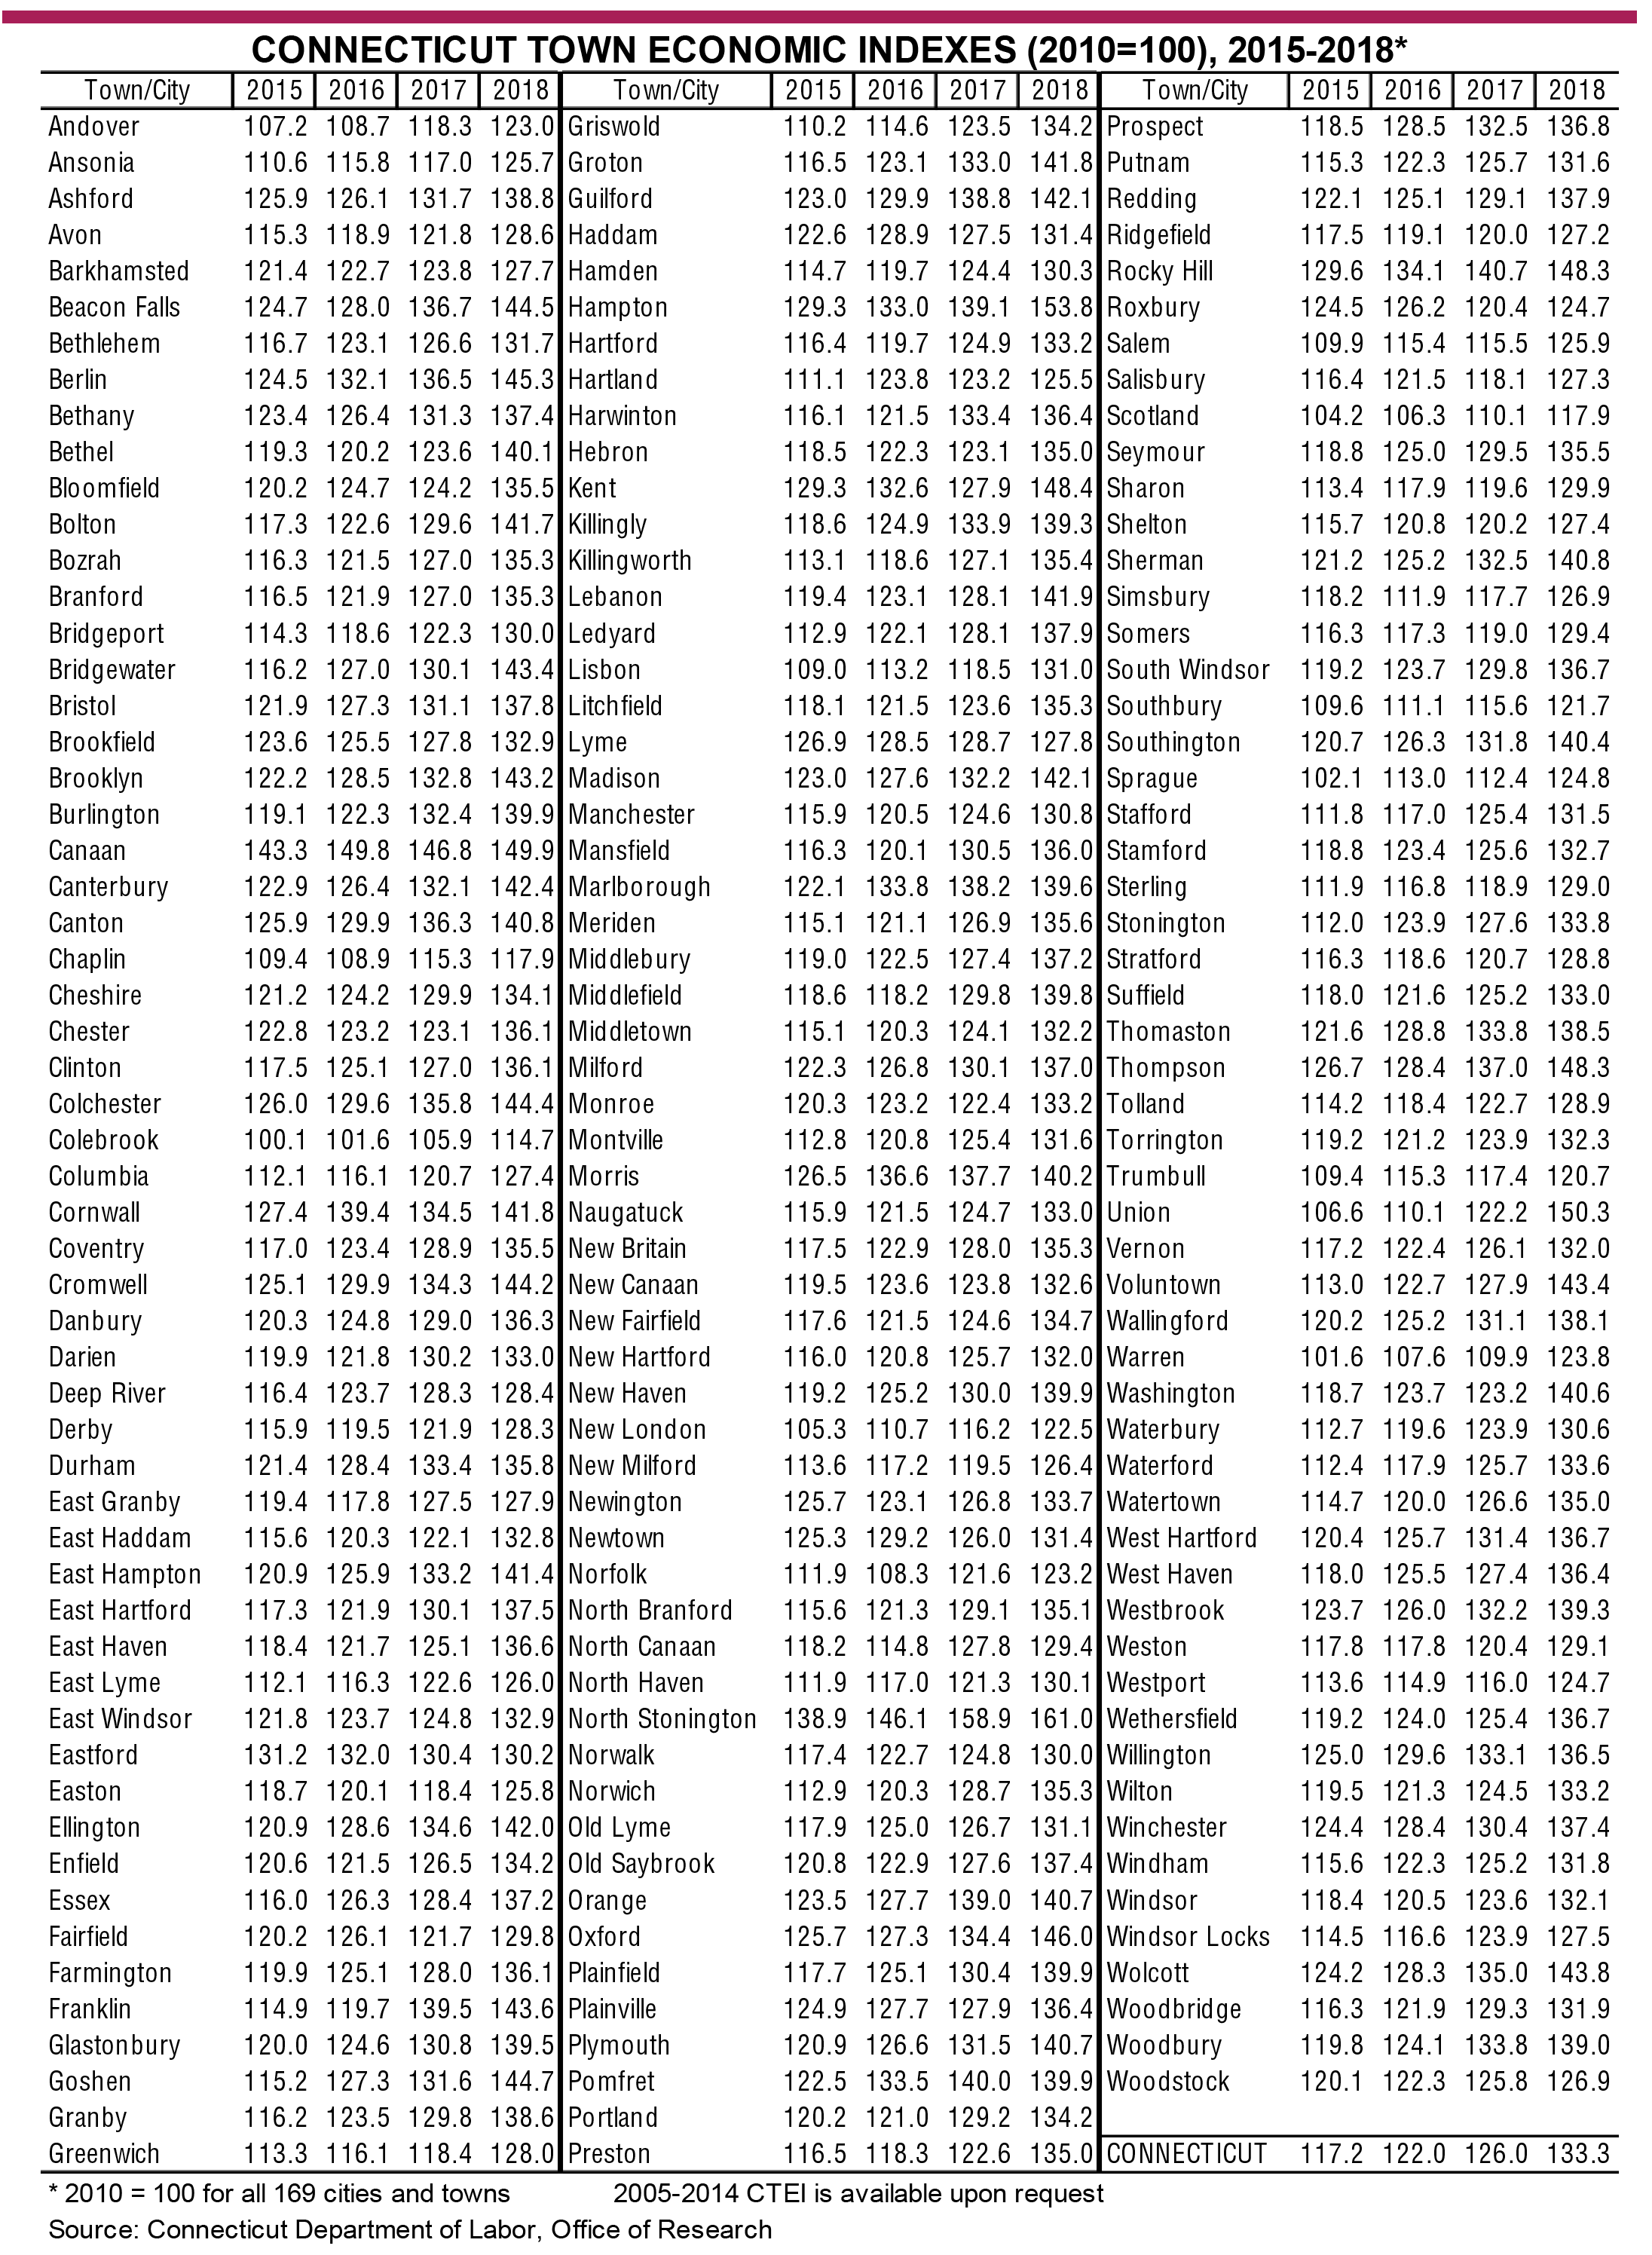 Download CTEI 2005-2018 data.xlsx